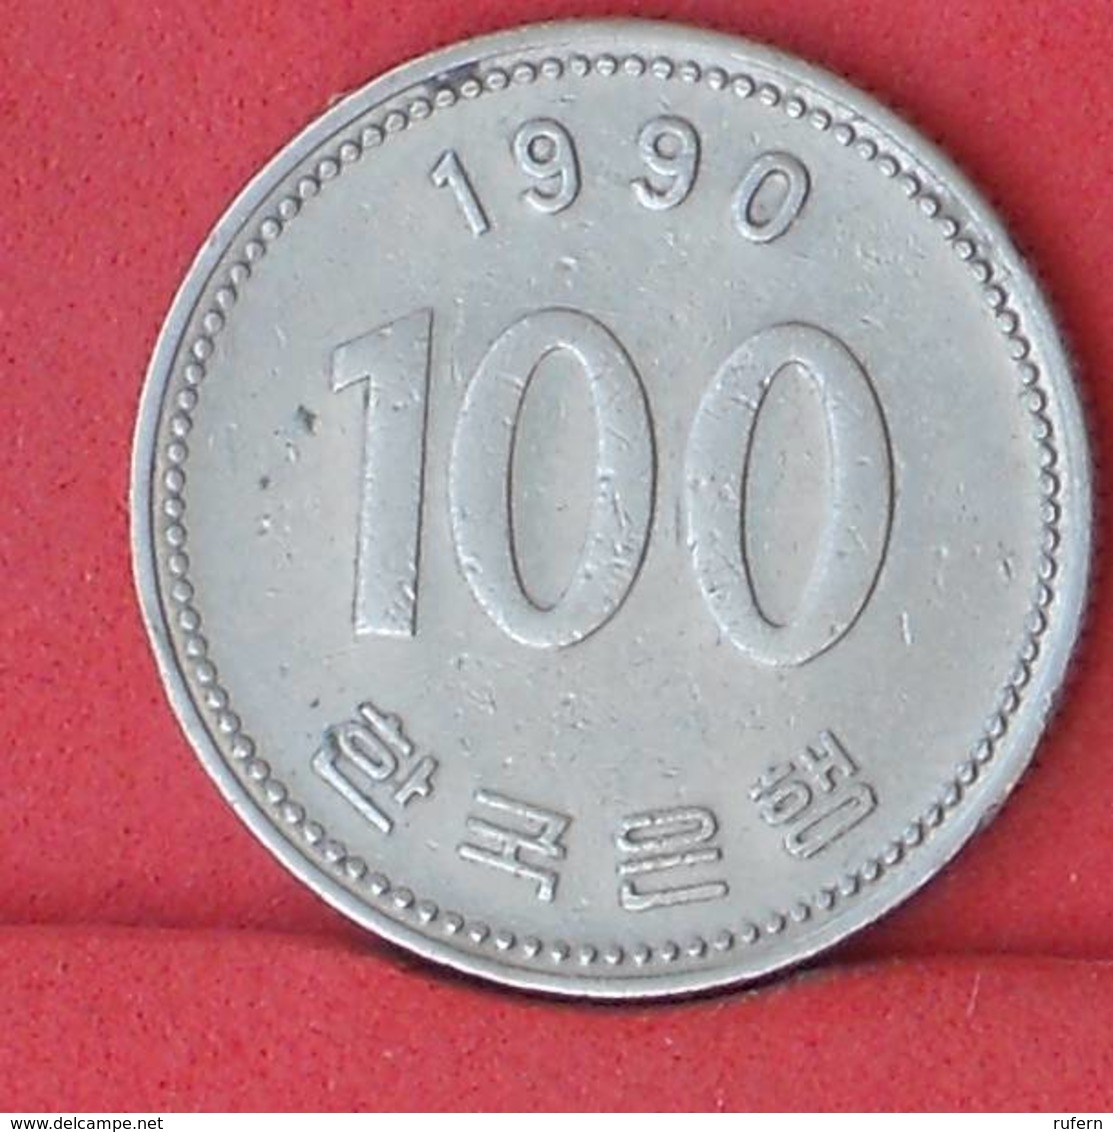 KOREA 100 WON 1990 -    KM# 35,2 - (Nº33817) - Korea, South